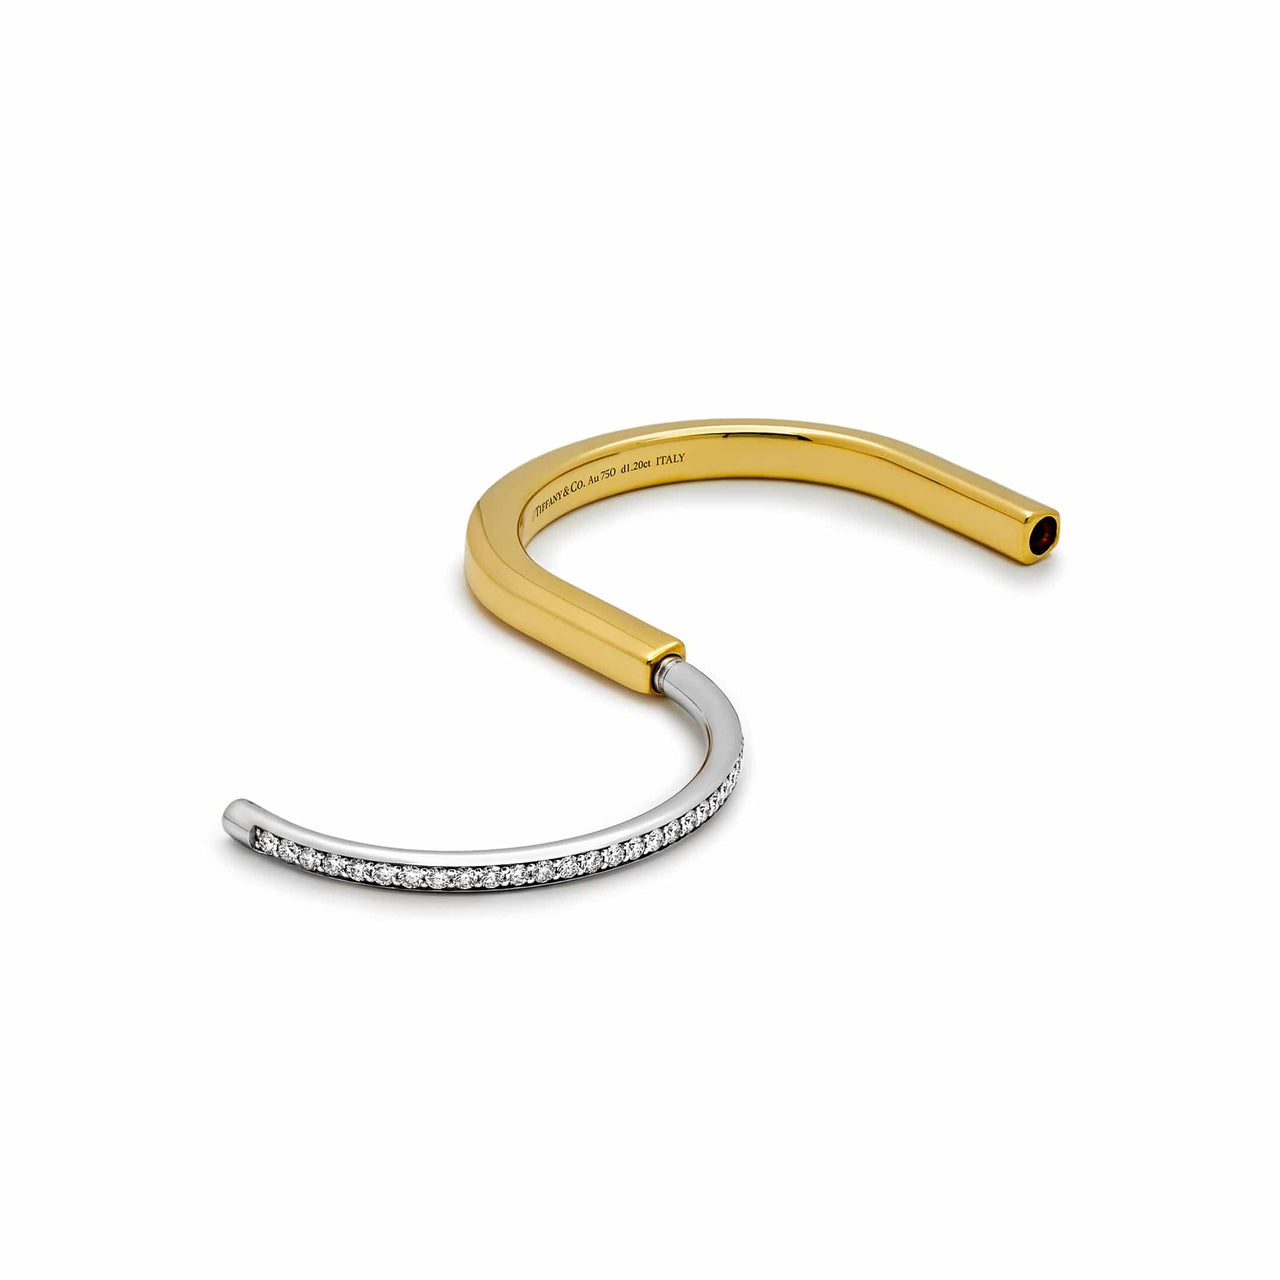 Tiffany & Co. Lock Bangle in Yellow and White Gold with Half Pave Diamonds Wrist Aficionado